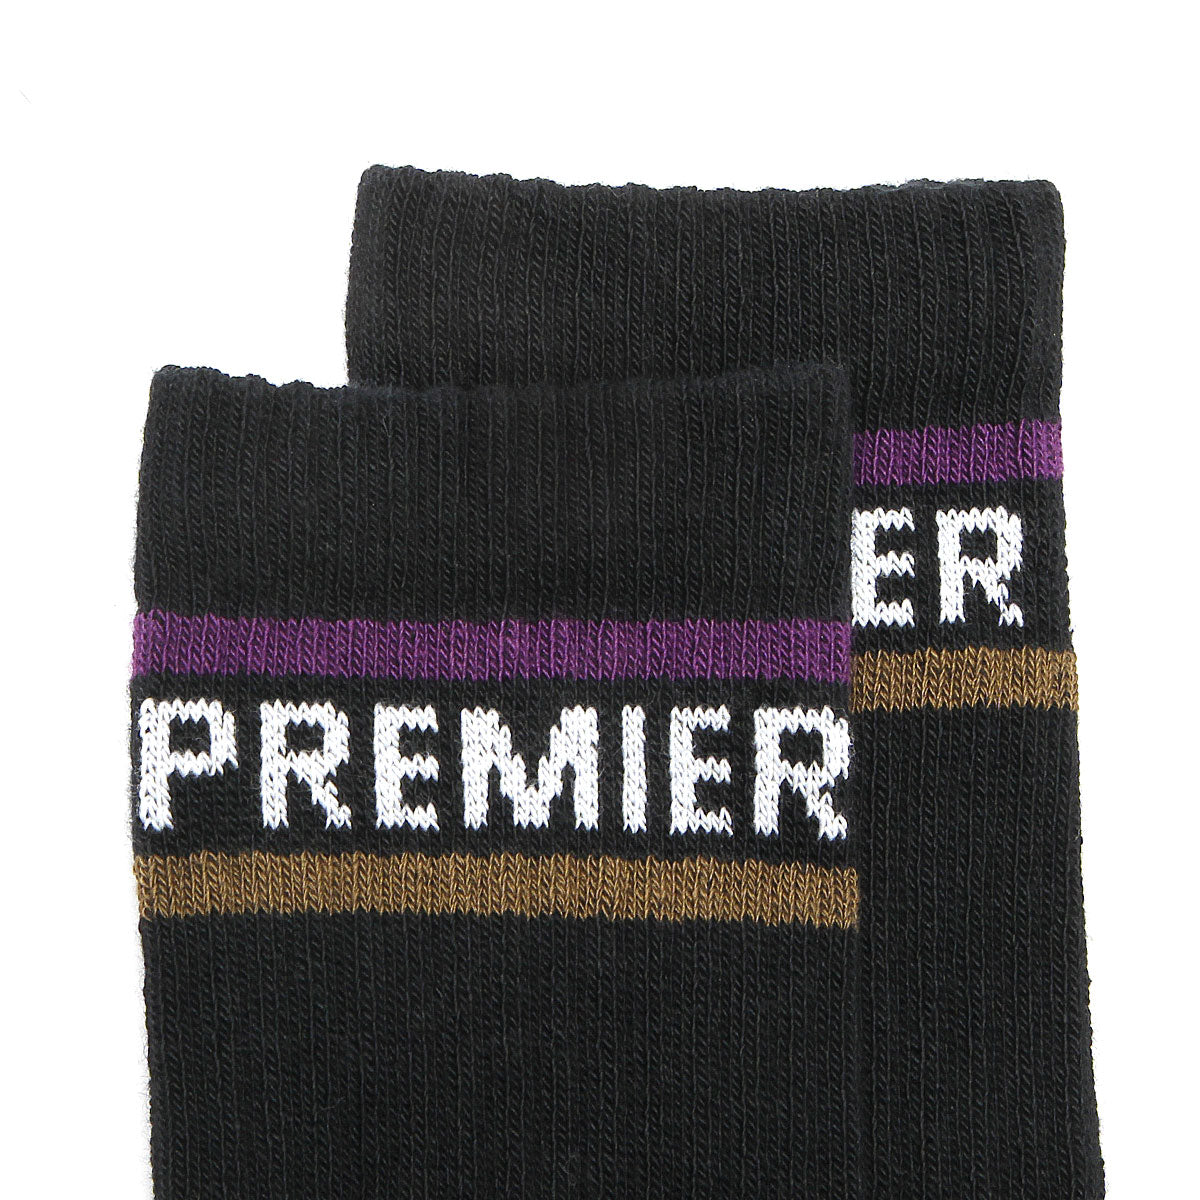 Premier Striped Crew Sock Black